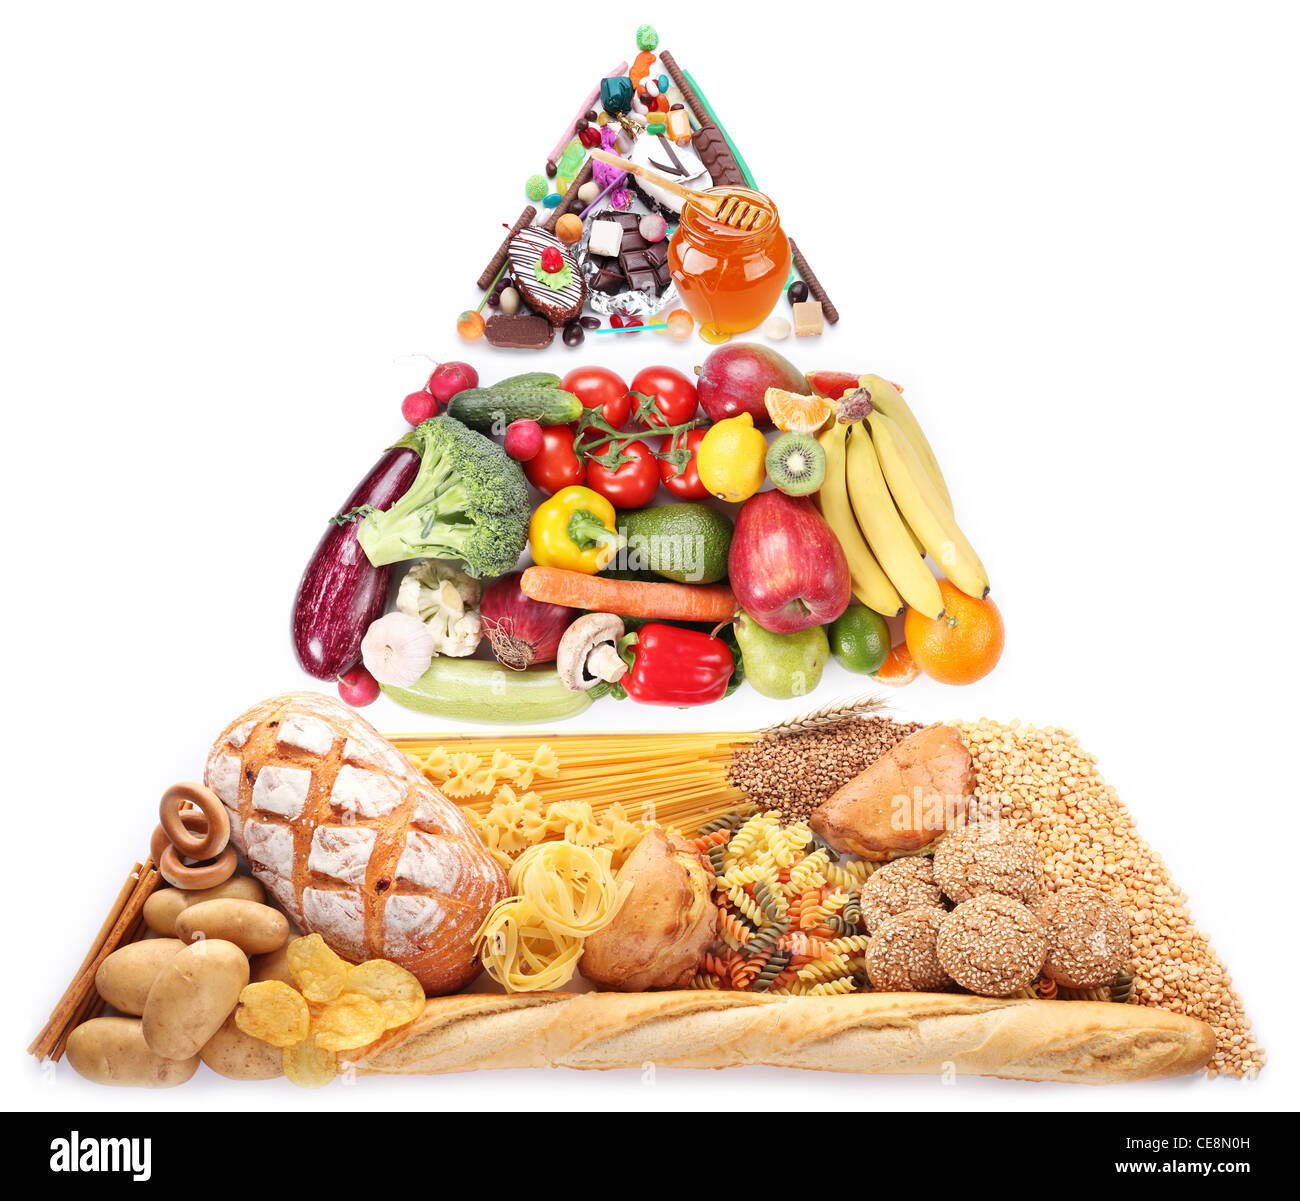 La piramide alimentare per vegetariani. Isolato su uno sfondo bianco. Foto Stock